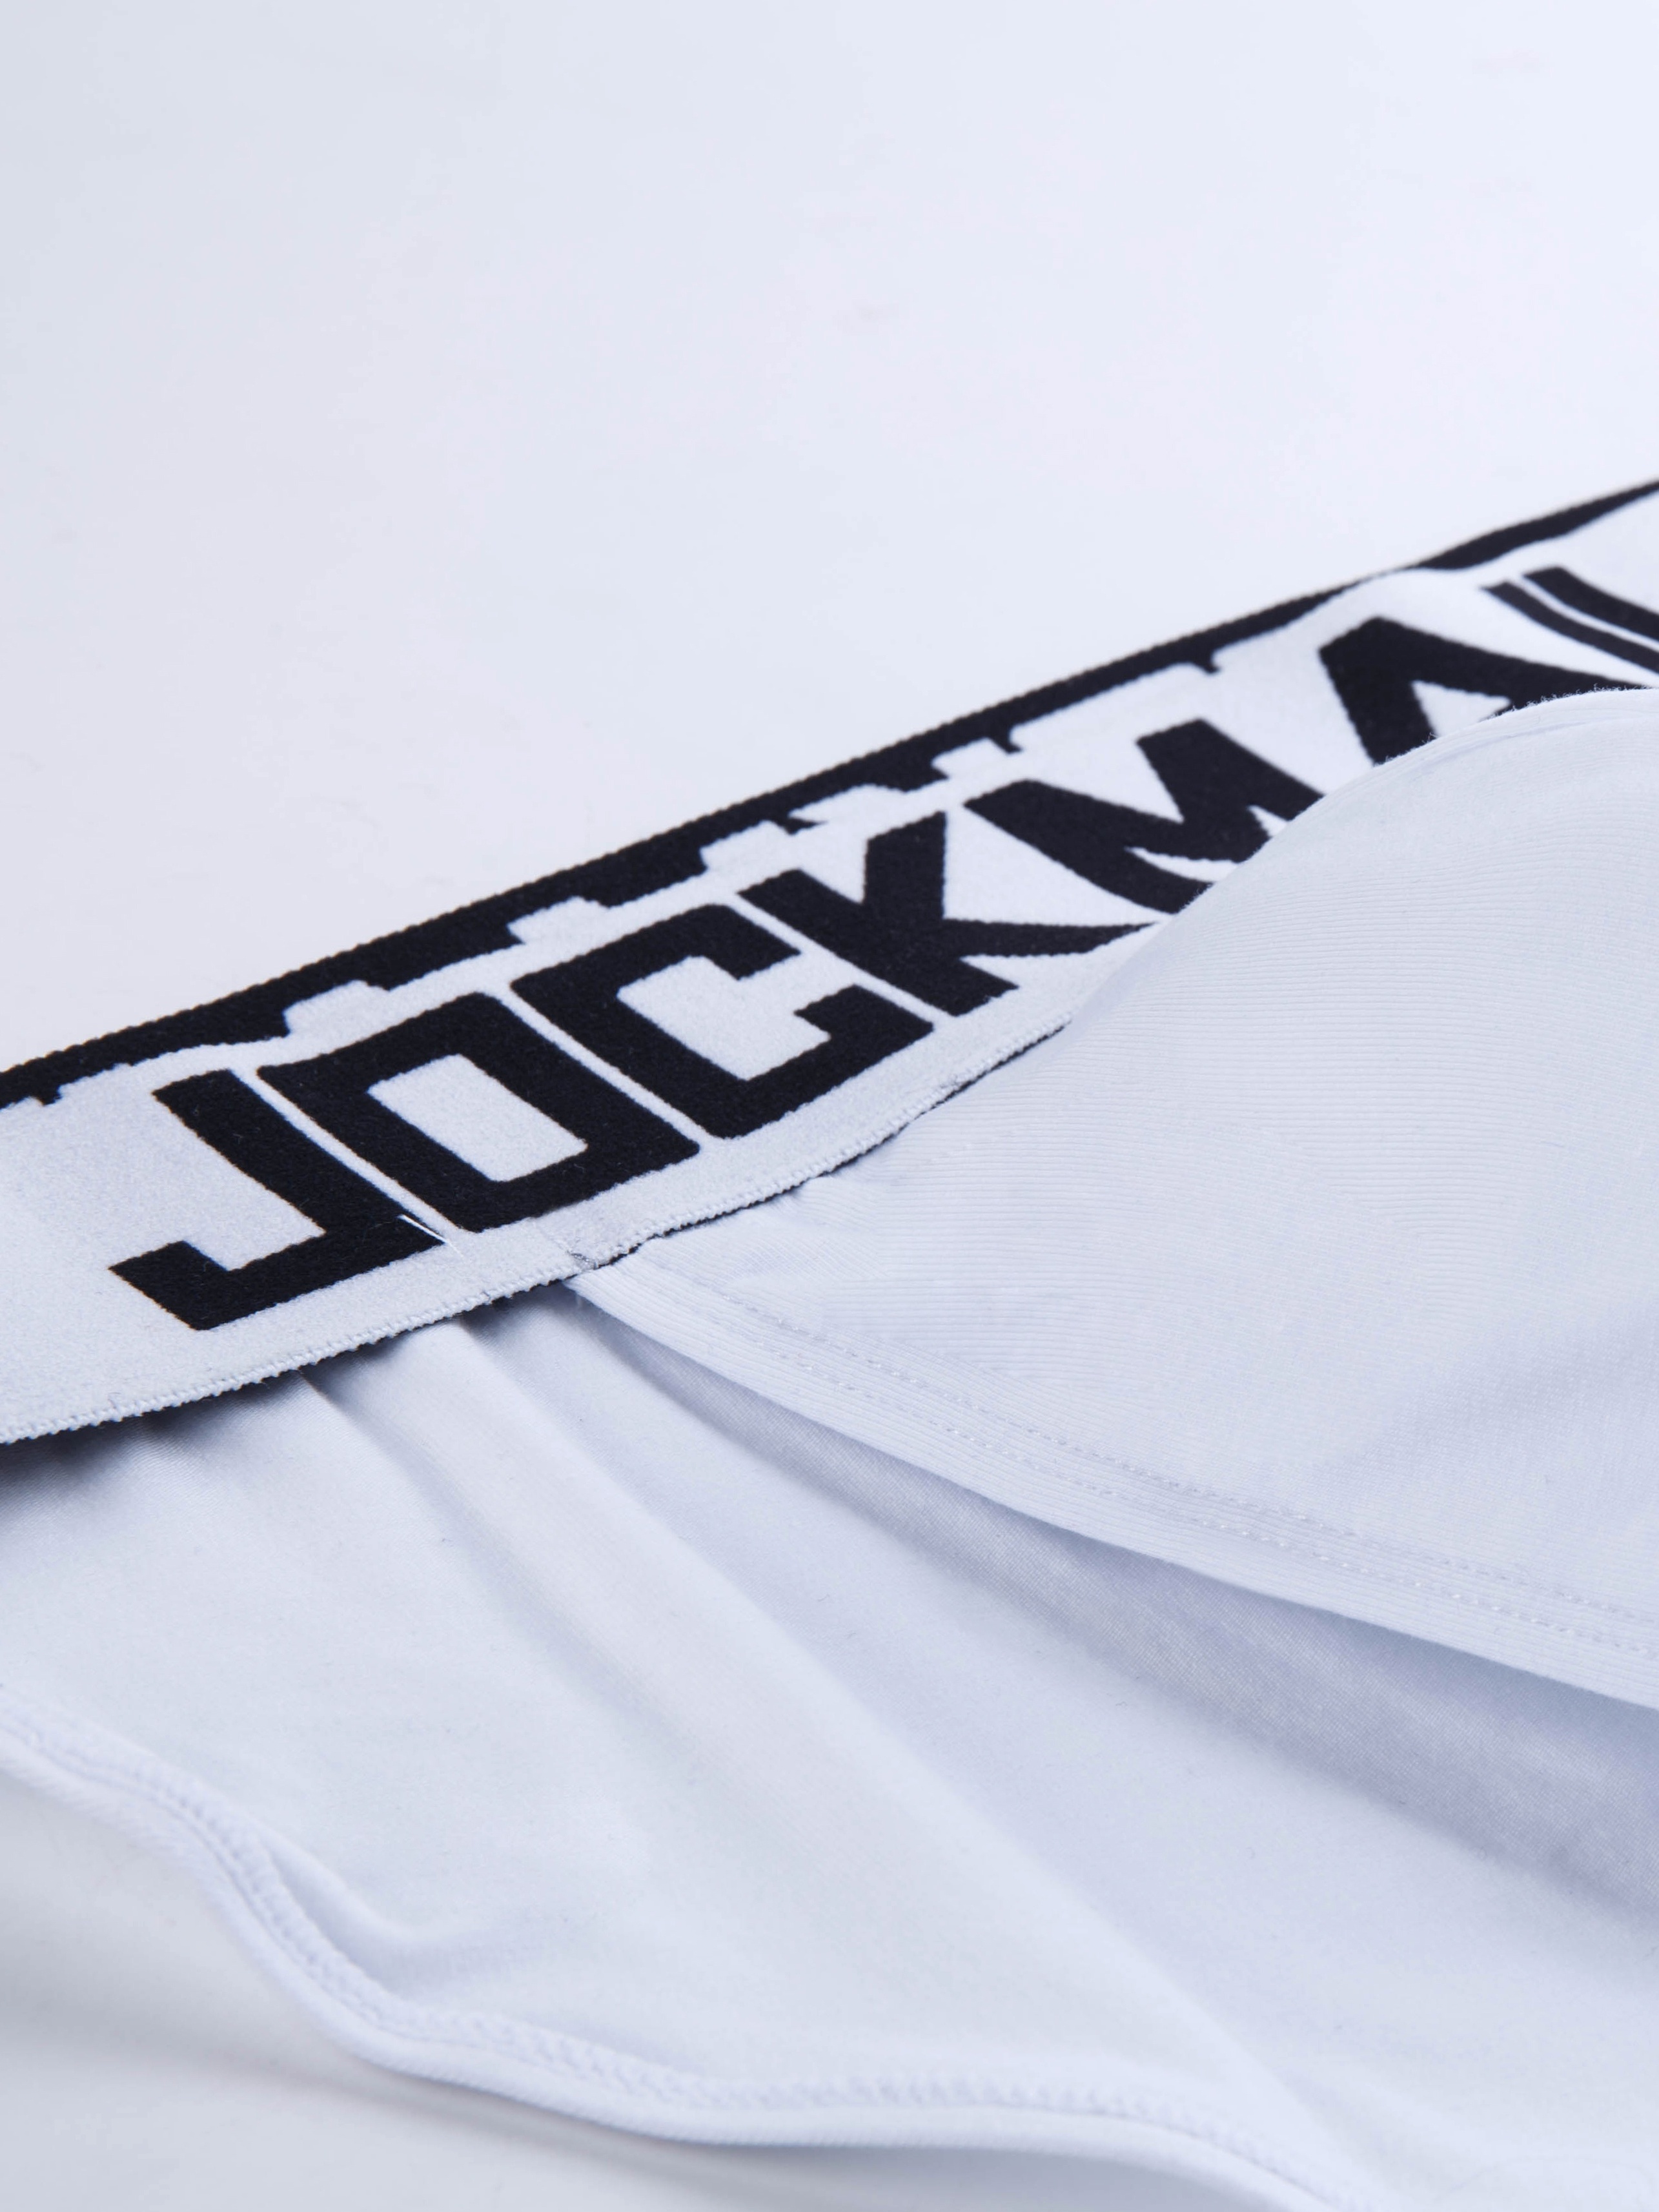 Jockmail Men's Briefs Comfortable Bulge Pouch Cotton Soft - Temu Canada